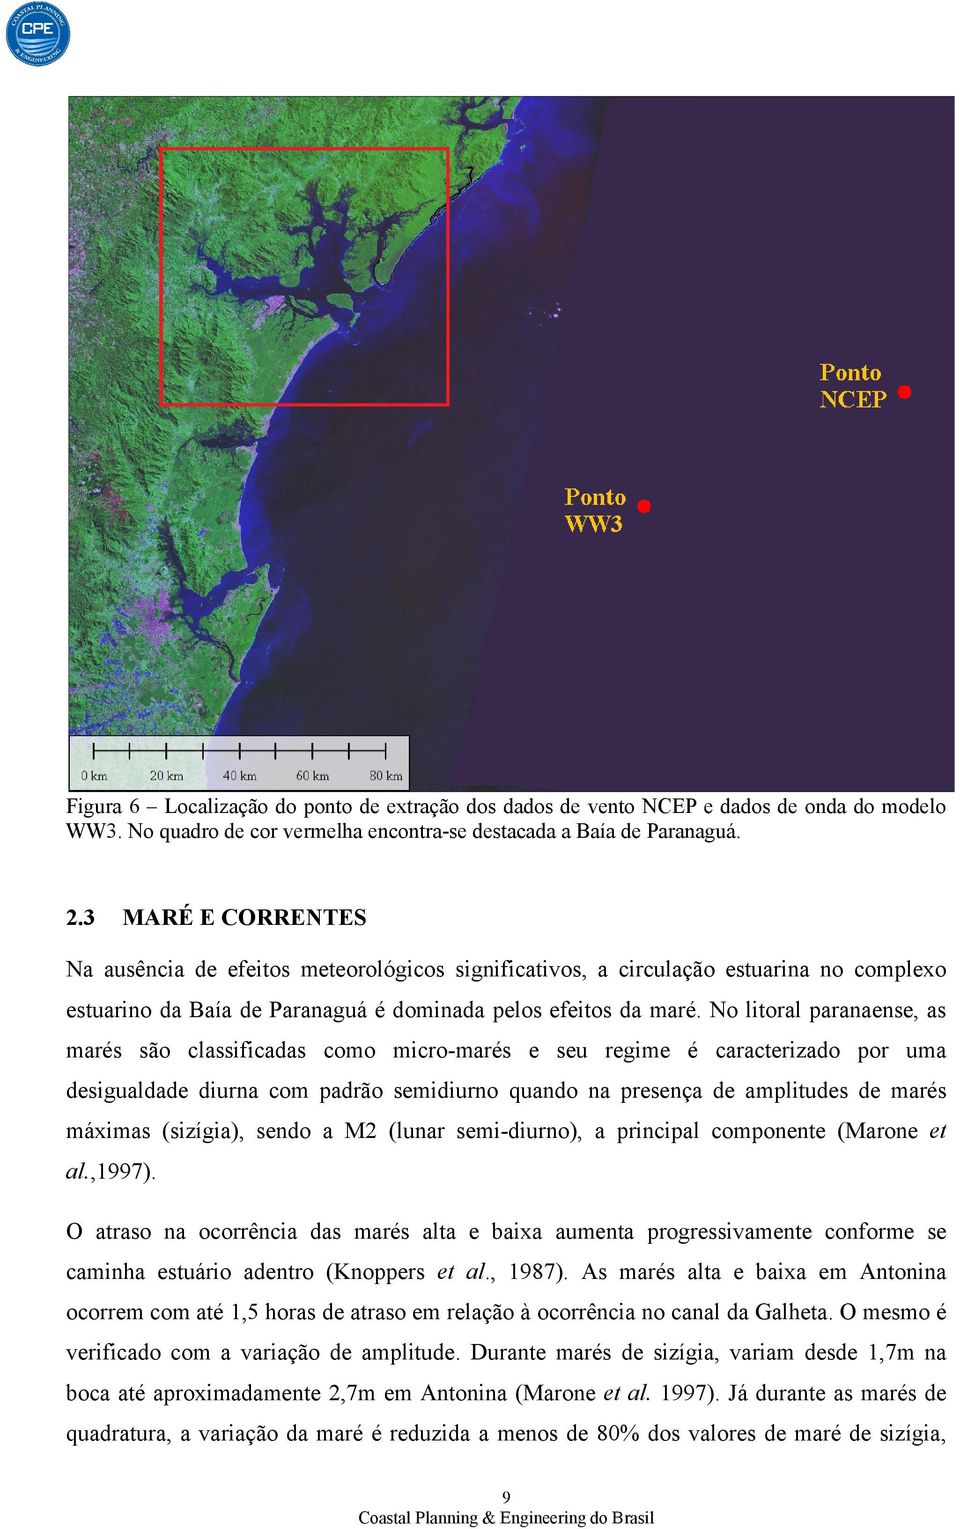 No litoral paranaense, as marés são classificadas como micro-marés e seu regime é caracterizado por uma desigualdade diurna com padrão semidiurno quando na presença de amplitudes de marés máximas